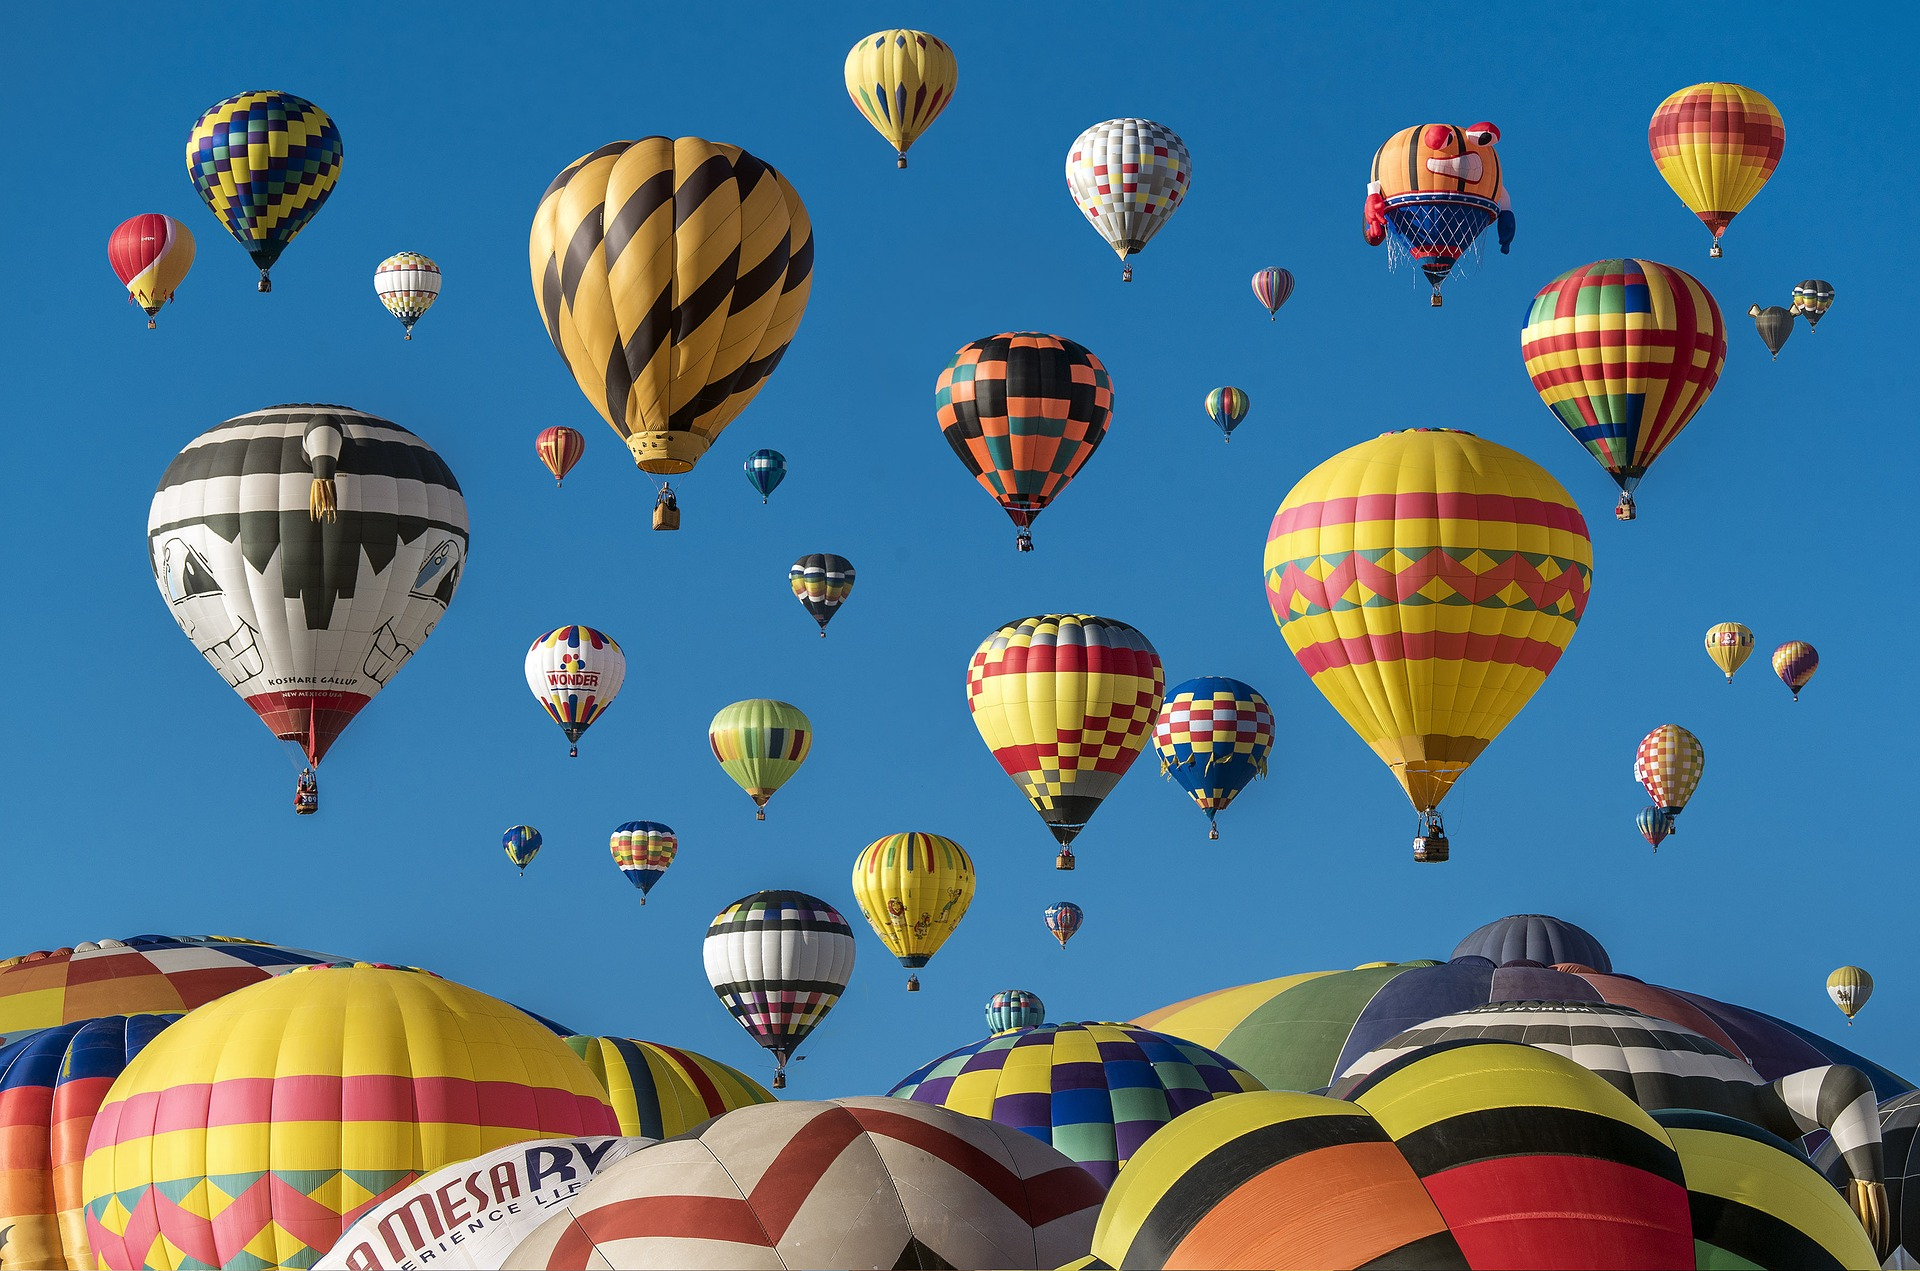 Wie Funktioniert Ein Heißluftballon? - Techfacts.de bestimmt für Wie Funktioniert Ein Heißluftballon